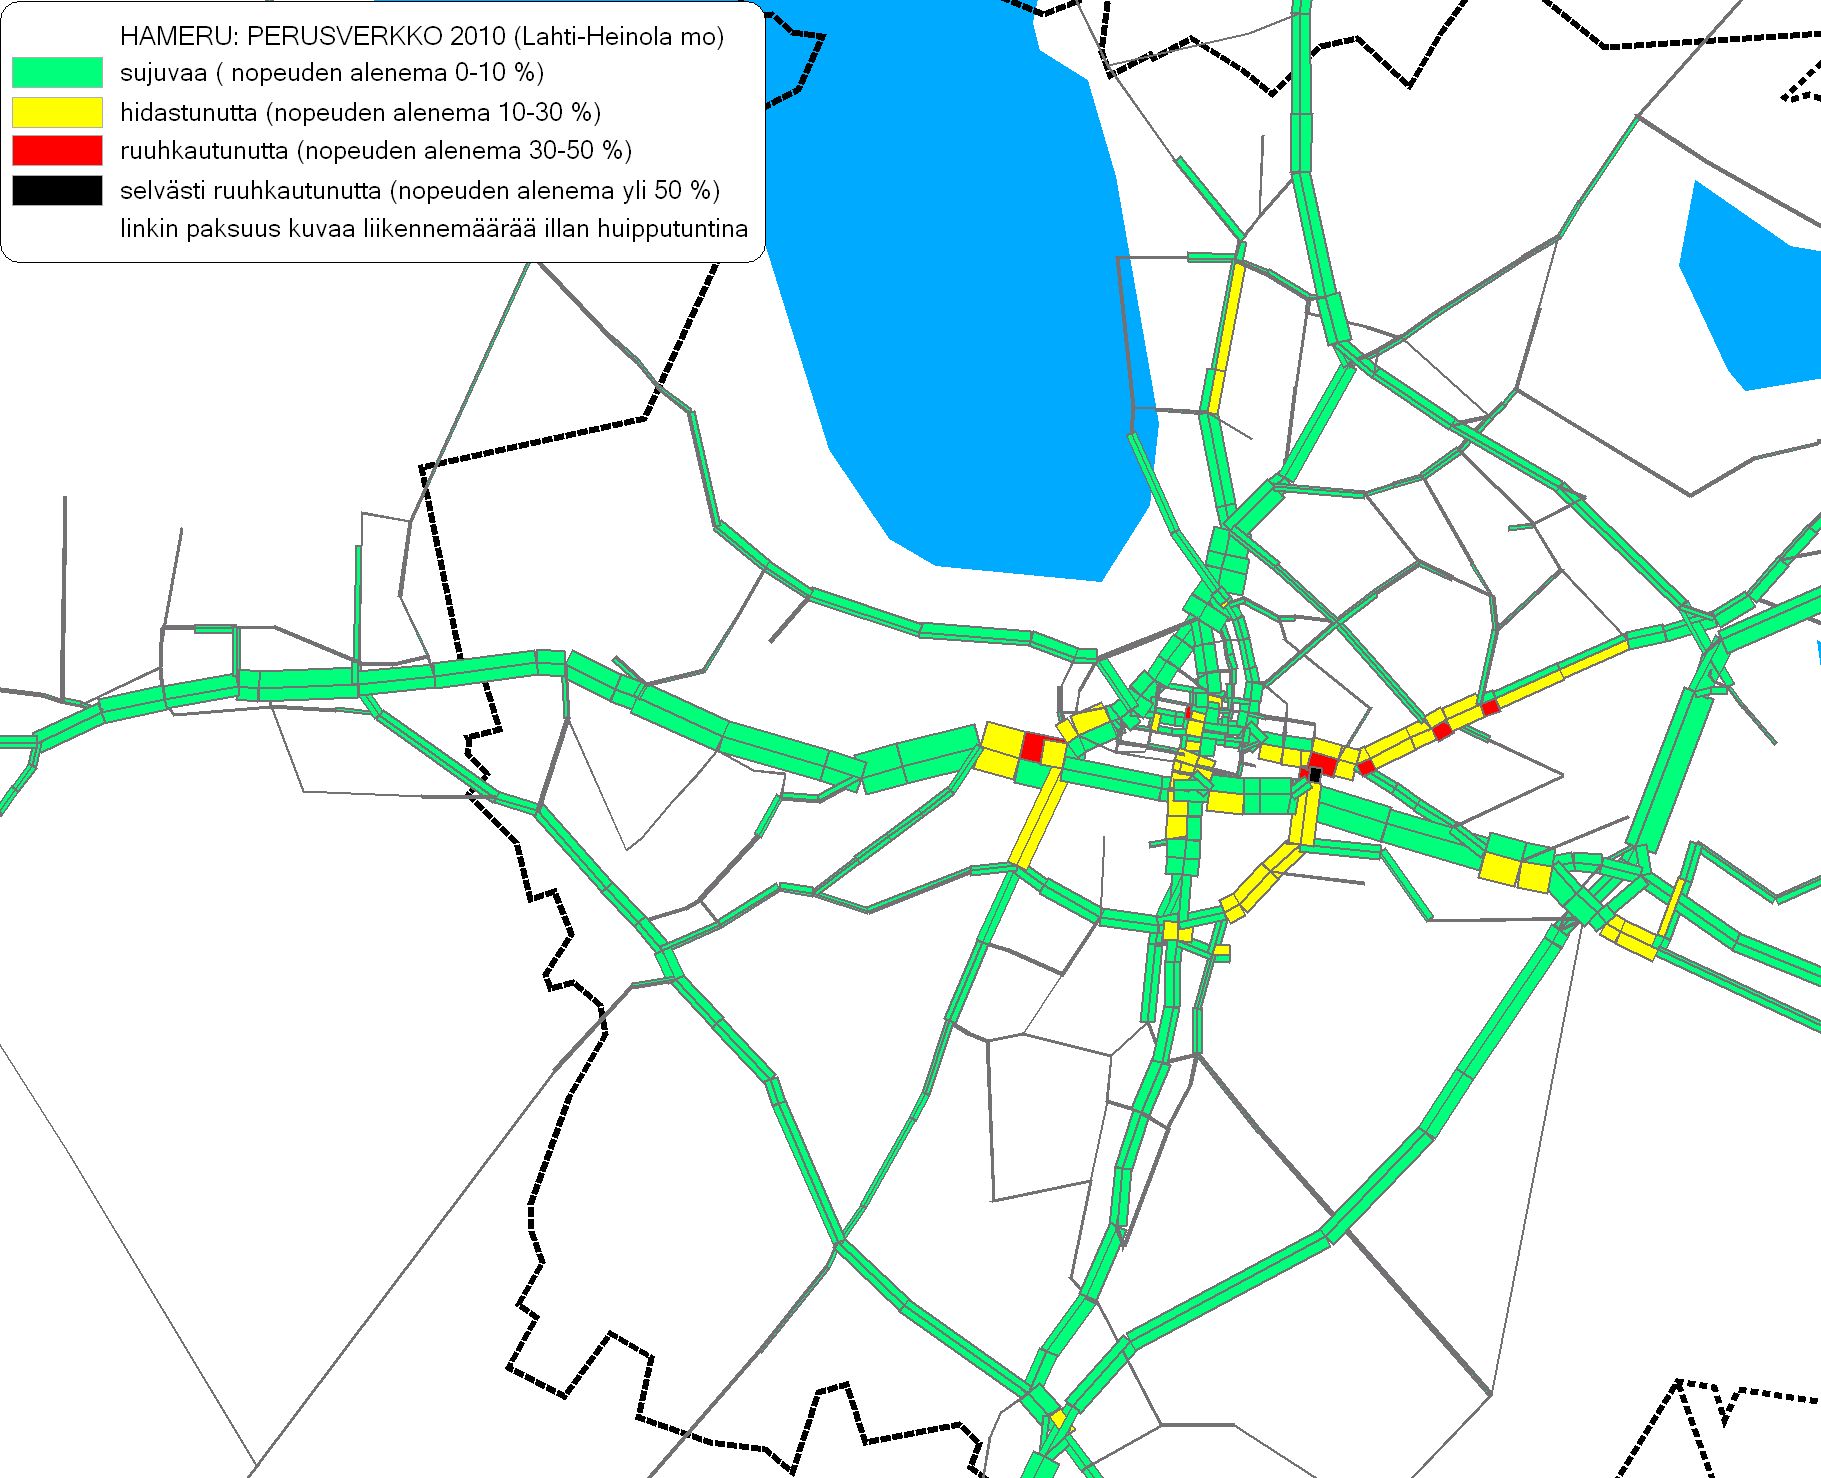 Hämeen tiepiirin liikenteen hallinta, toimenpideohjelma 2007-2015